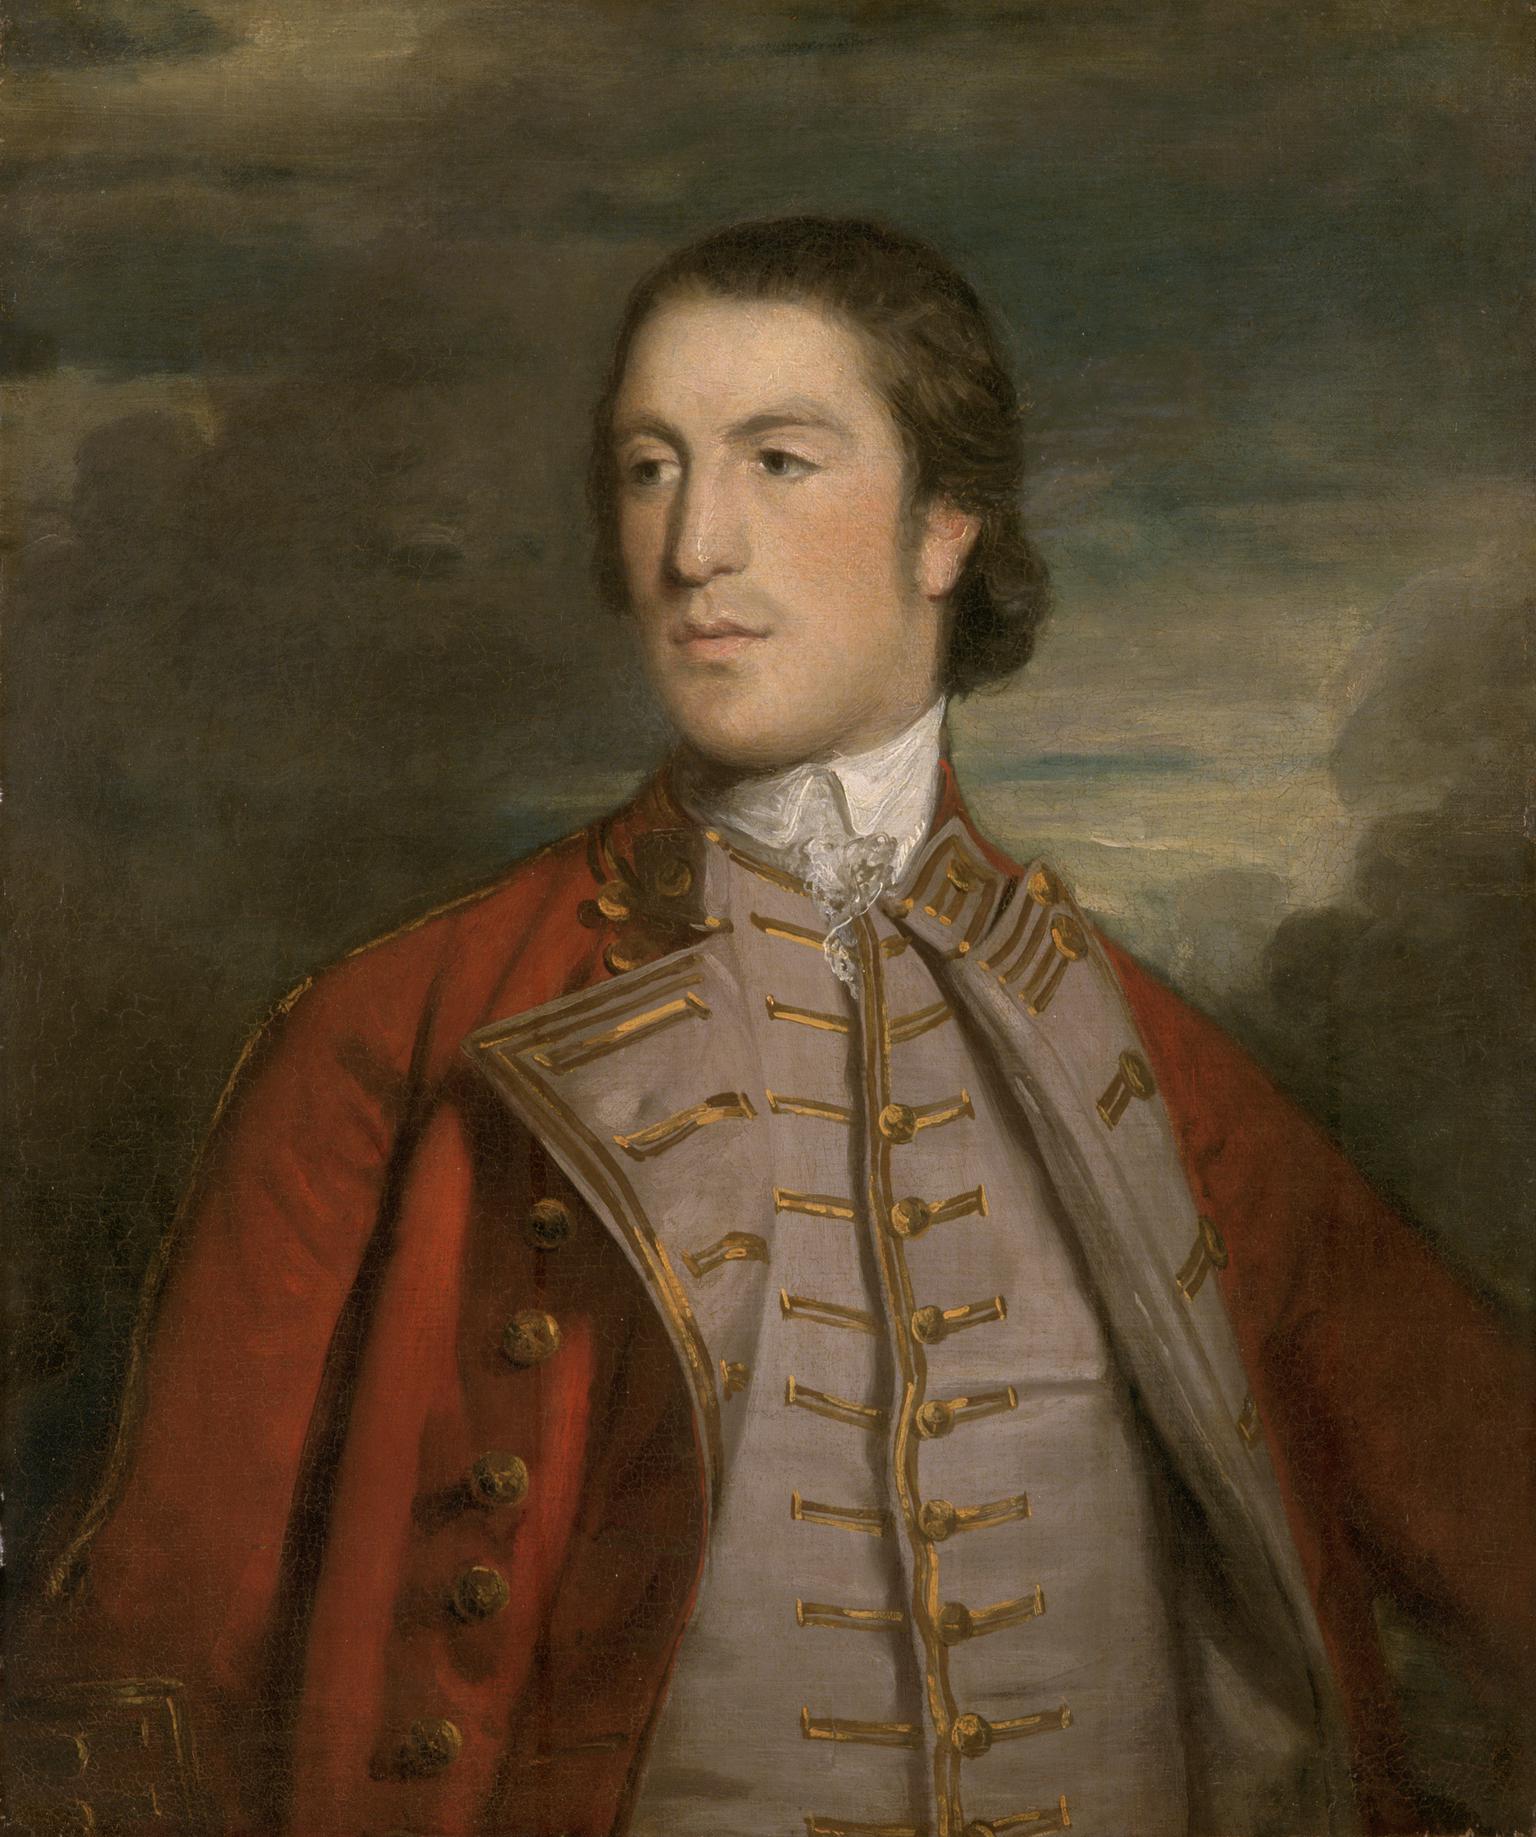 Thomas Moreton Reynolds, 2nd Lord Ducie of Tortworth (1733-1785)